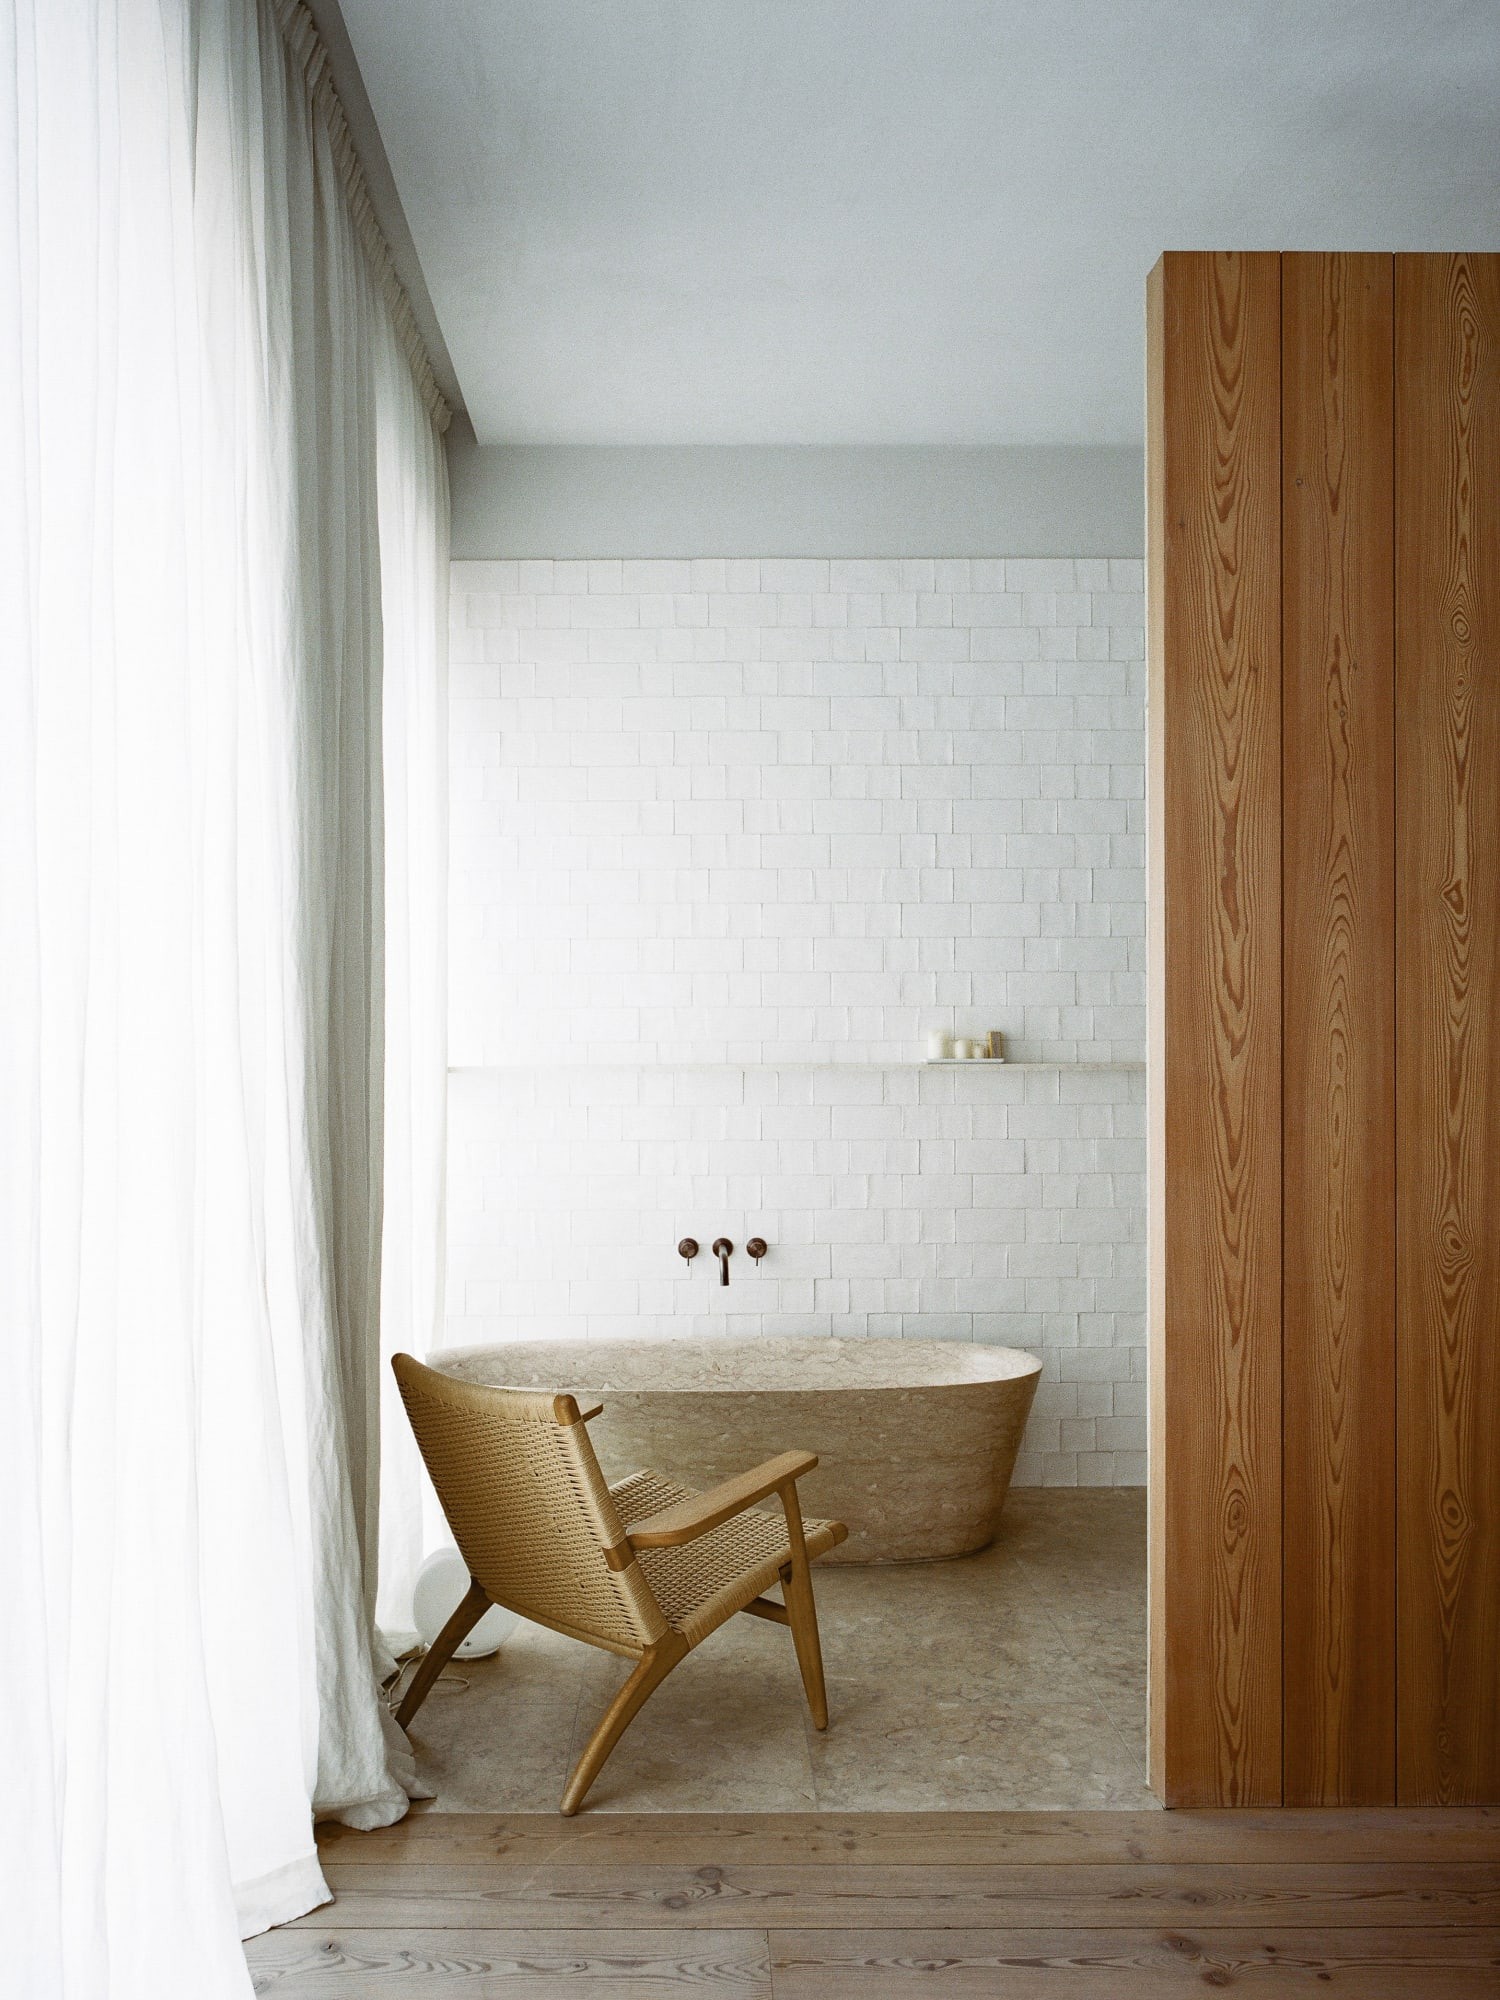 Décor do dia: banheiro com decoração minimalista e clima de spa (Foto: Rui Cardoso)